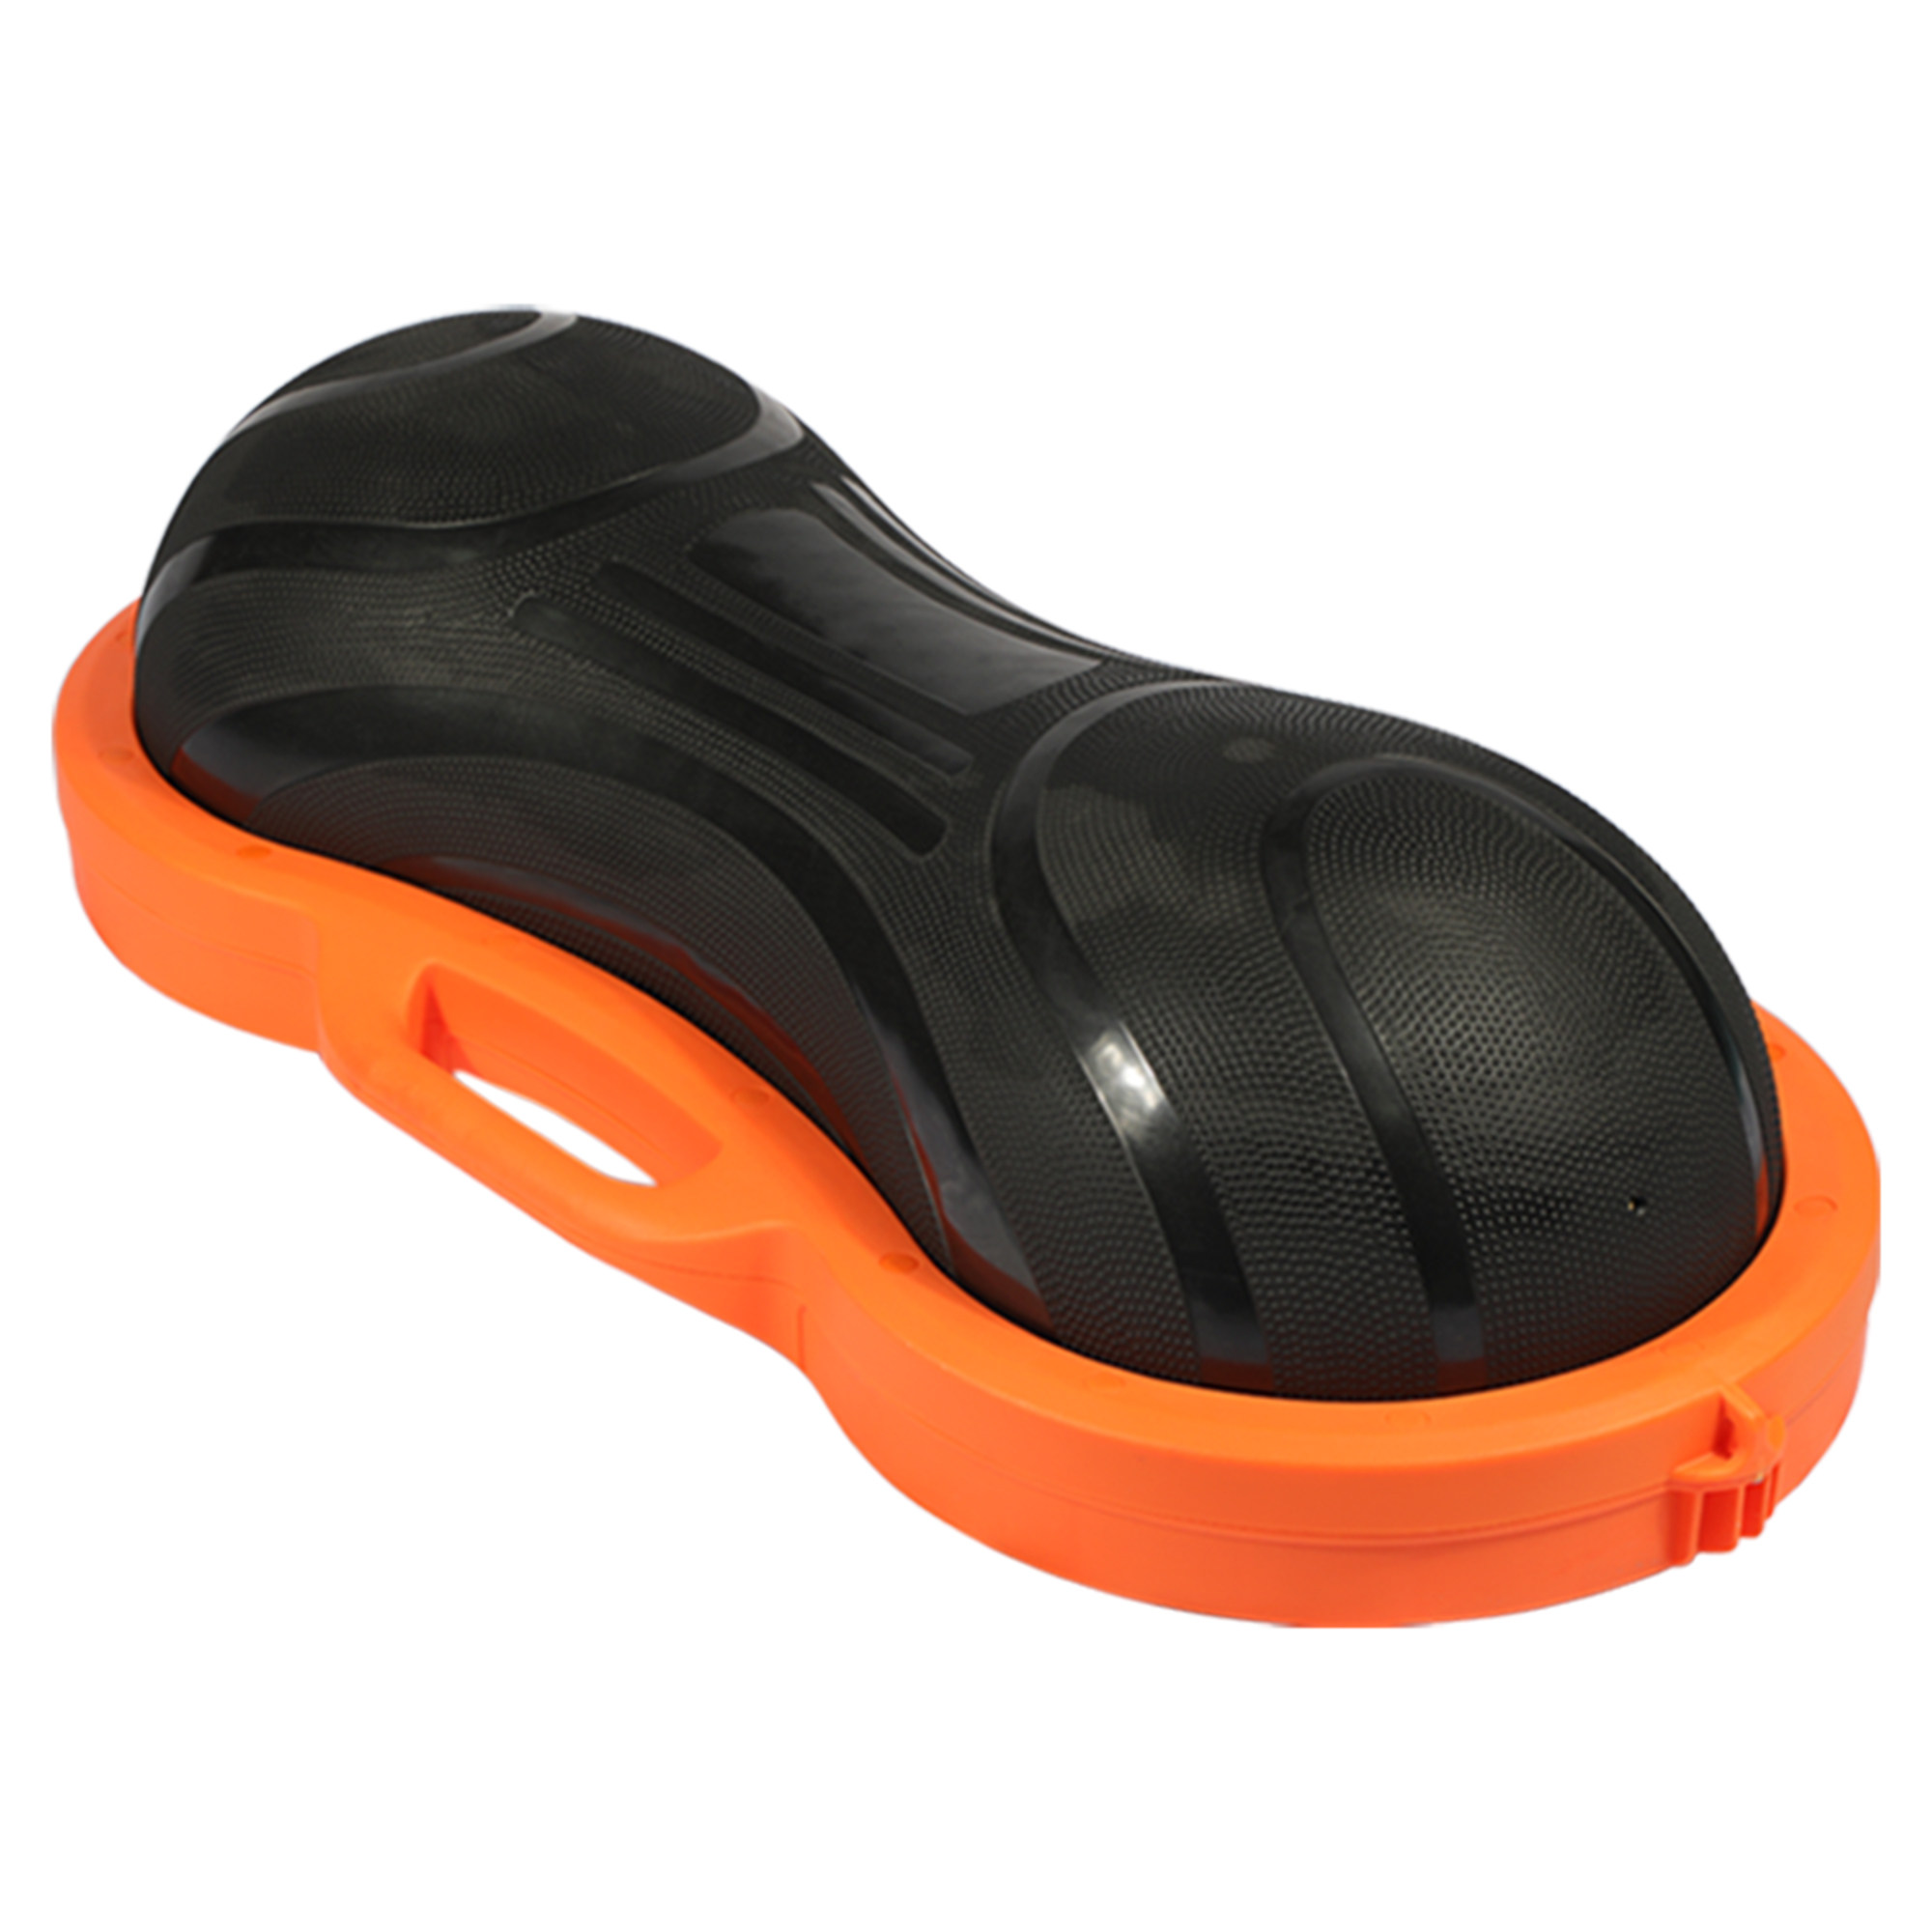 Inflatable Used Exercise Aerobic Platform Fitness Plastic Yoga Fitness Balance Board Peanut Step